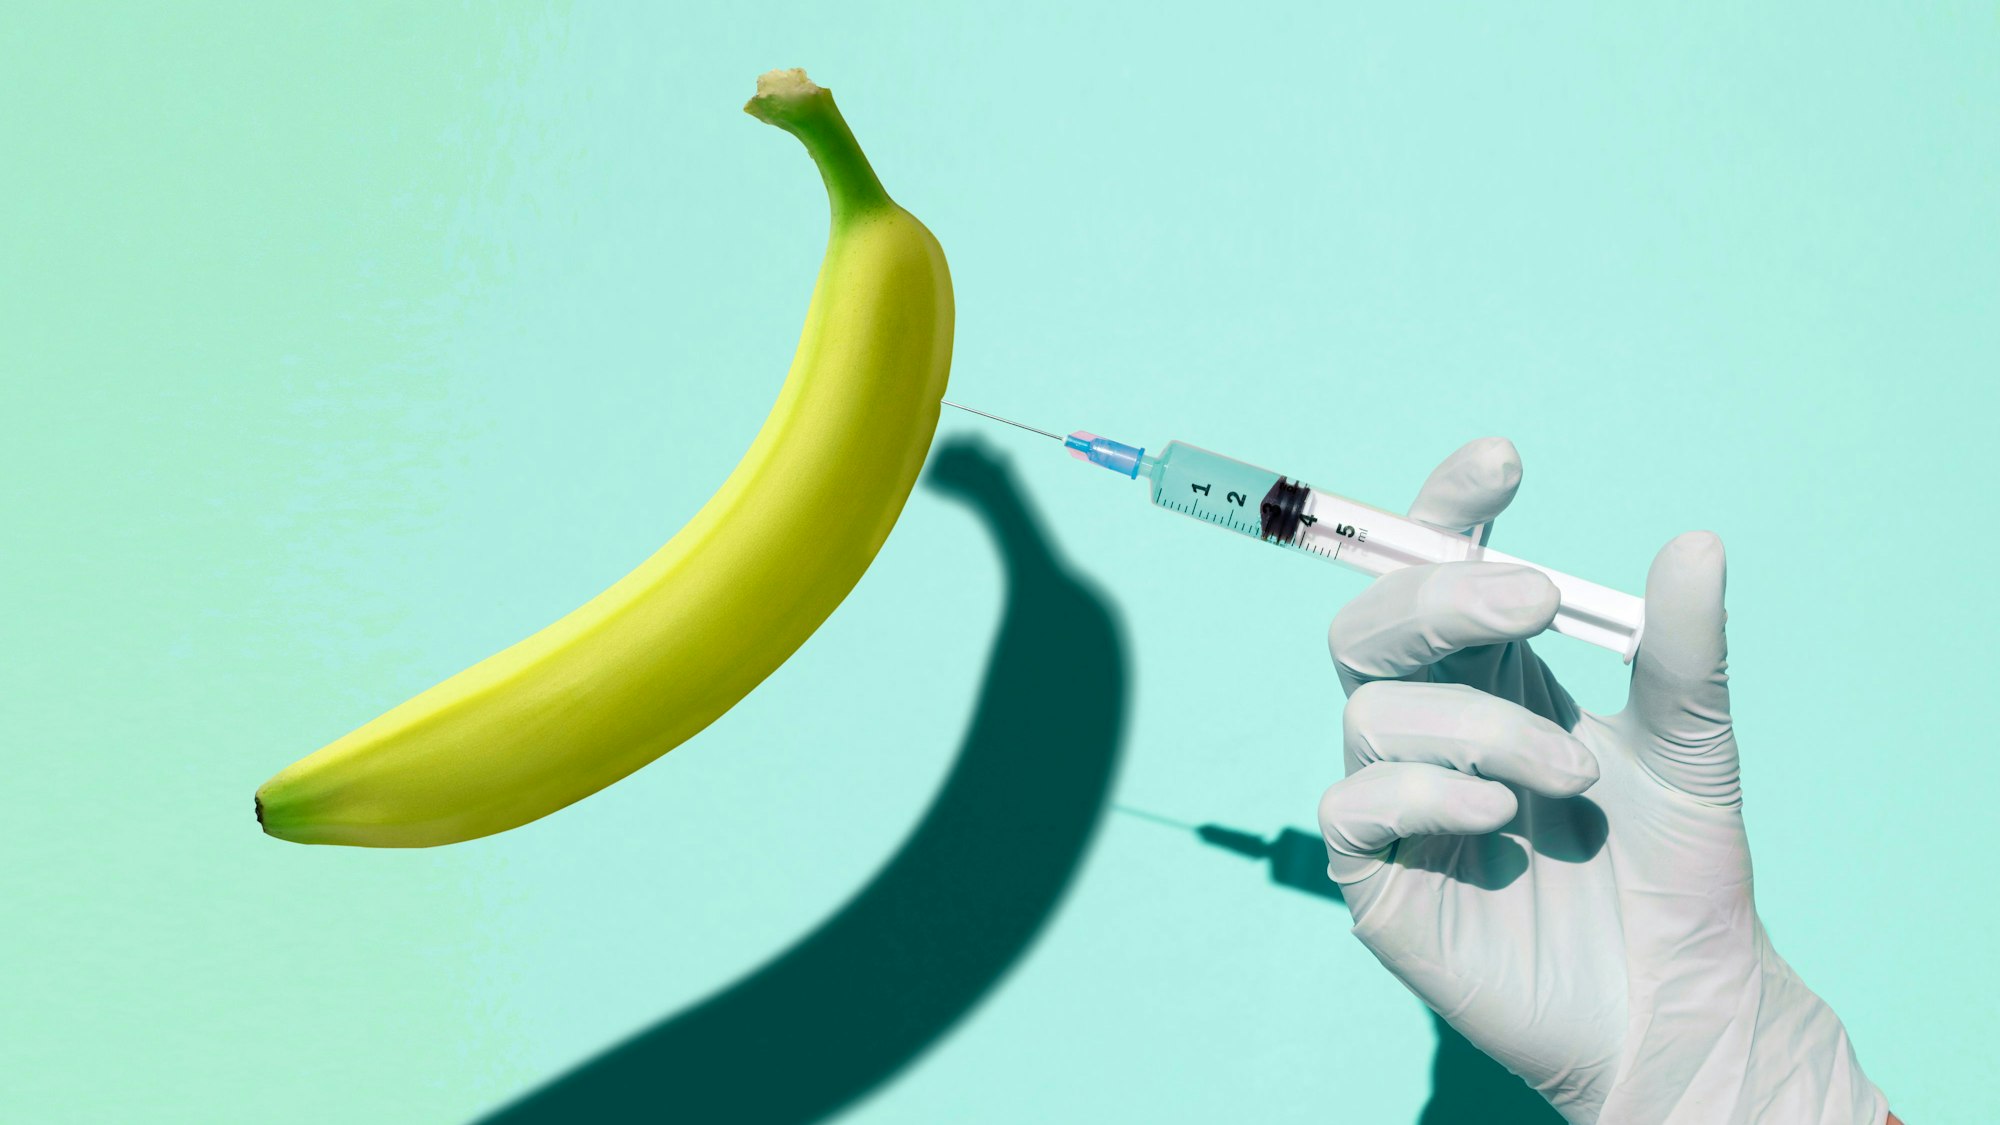 Eine Hand setzt eine Spritze in eine Banane. Symbolbild zu Erektionsstörungen.

Getty Images / Francesco Carta fotografo